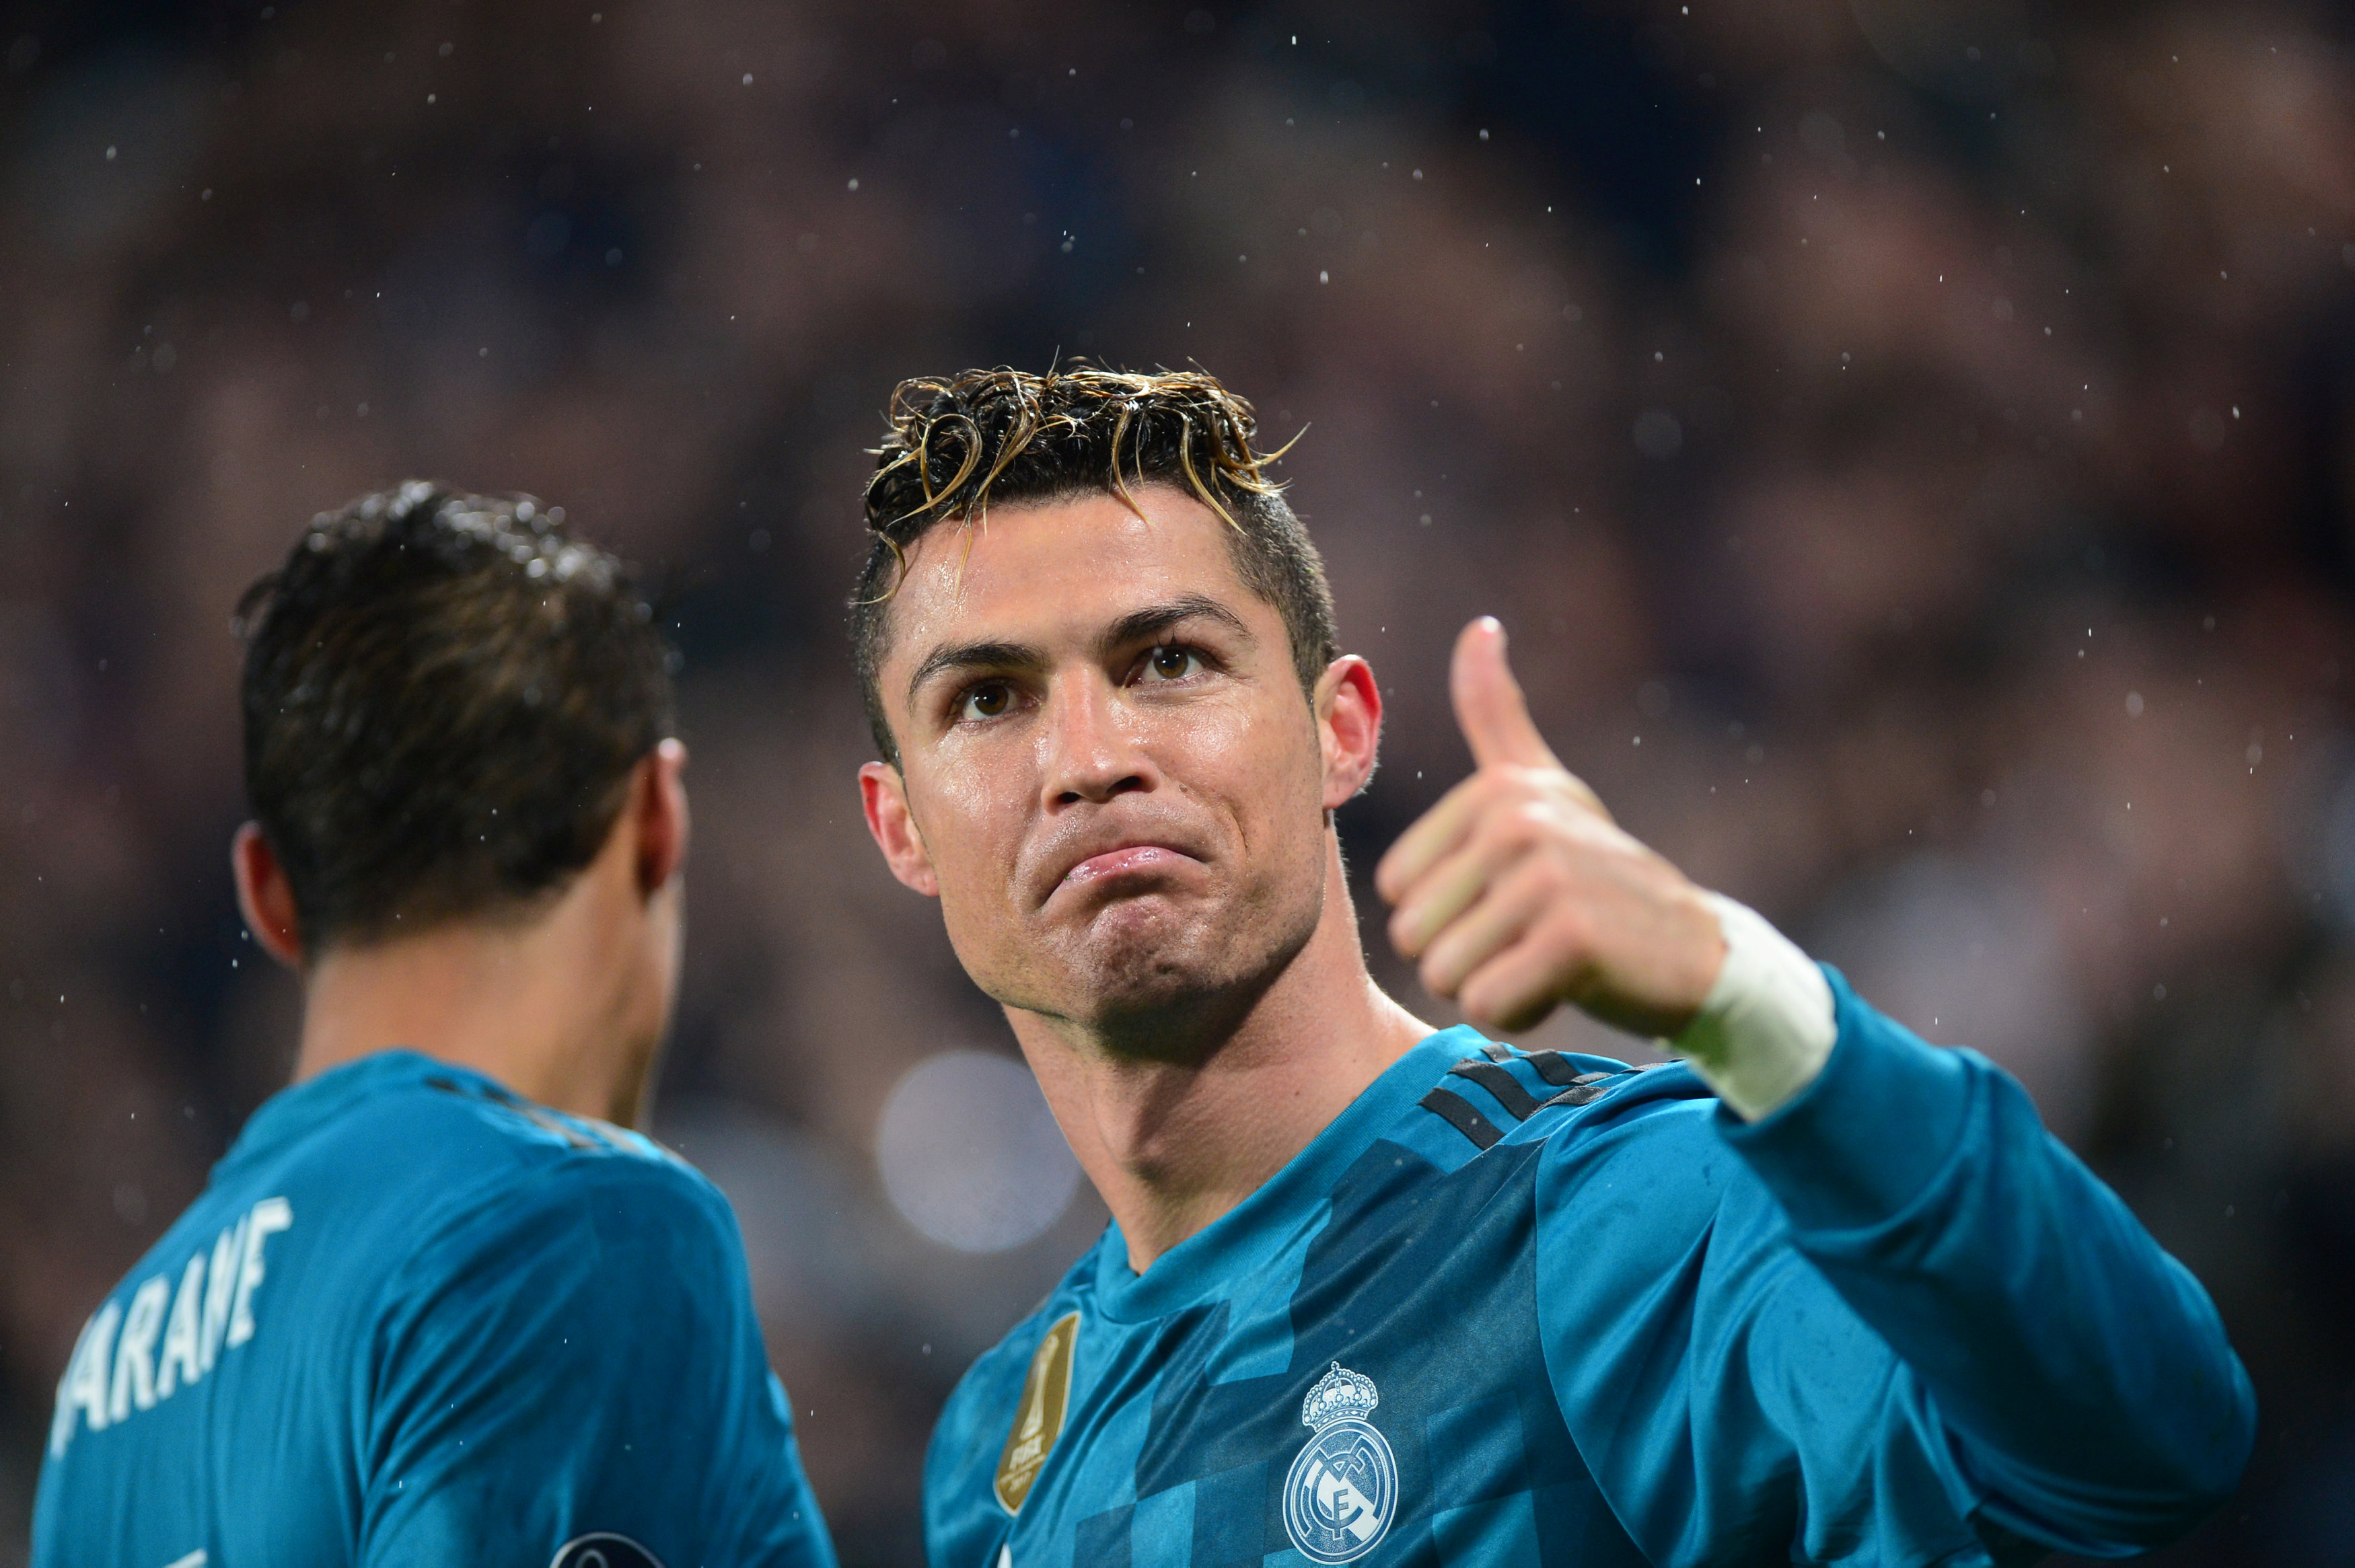 Revelan detalle exclusivo de la ruptura entre Cristiano Ronaldo y el Real Madrid